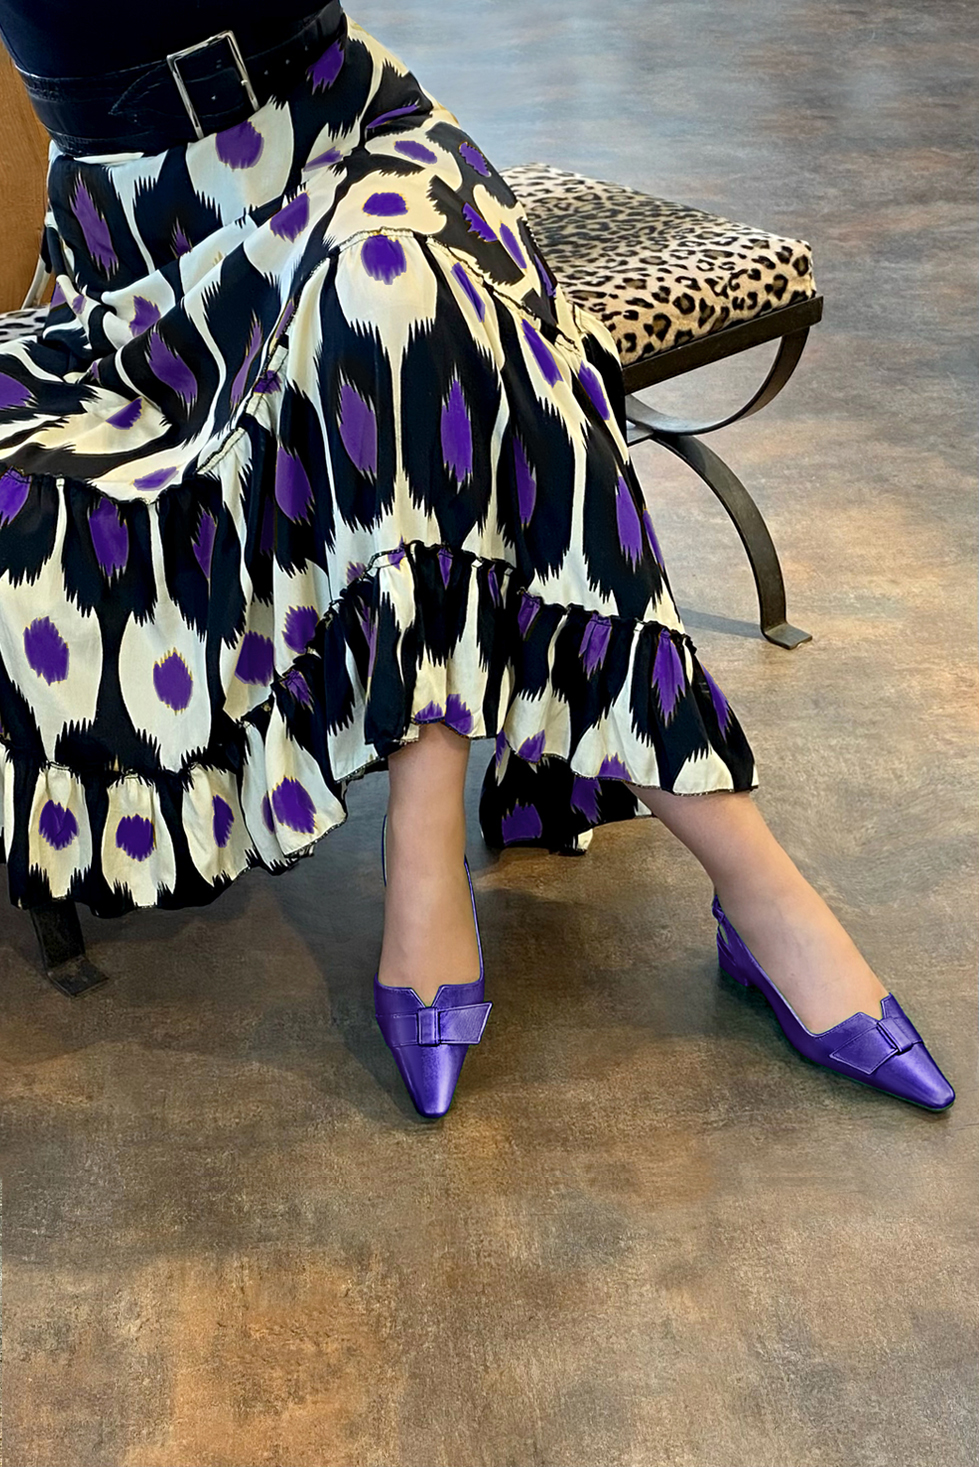 Chaussure femme à brides :  couleur violet améthyste. Bout effilé. Petit talon bottier. Vue porté - Florence KOOIJMAN